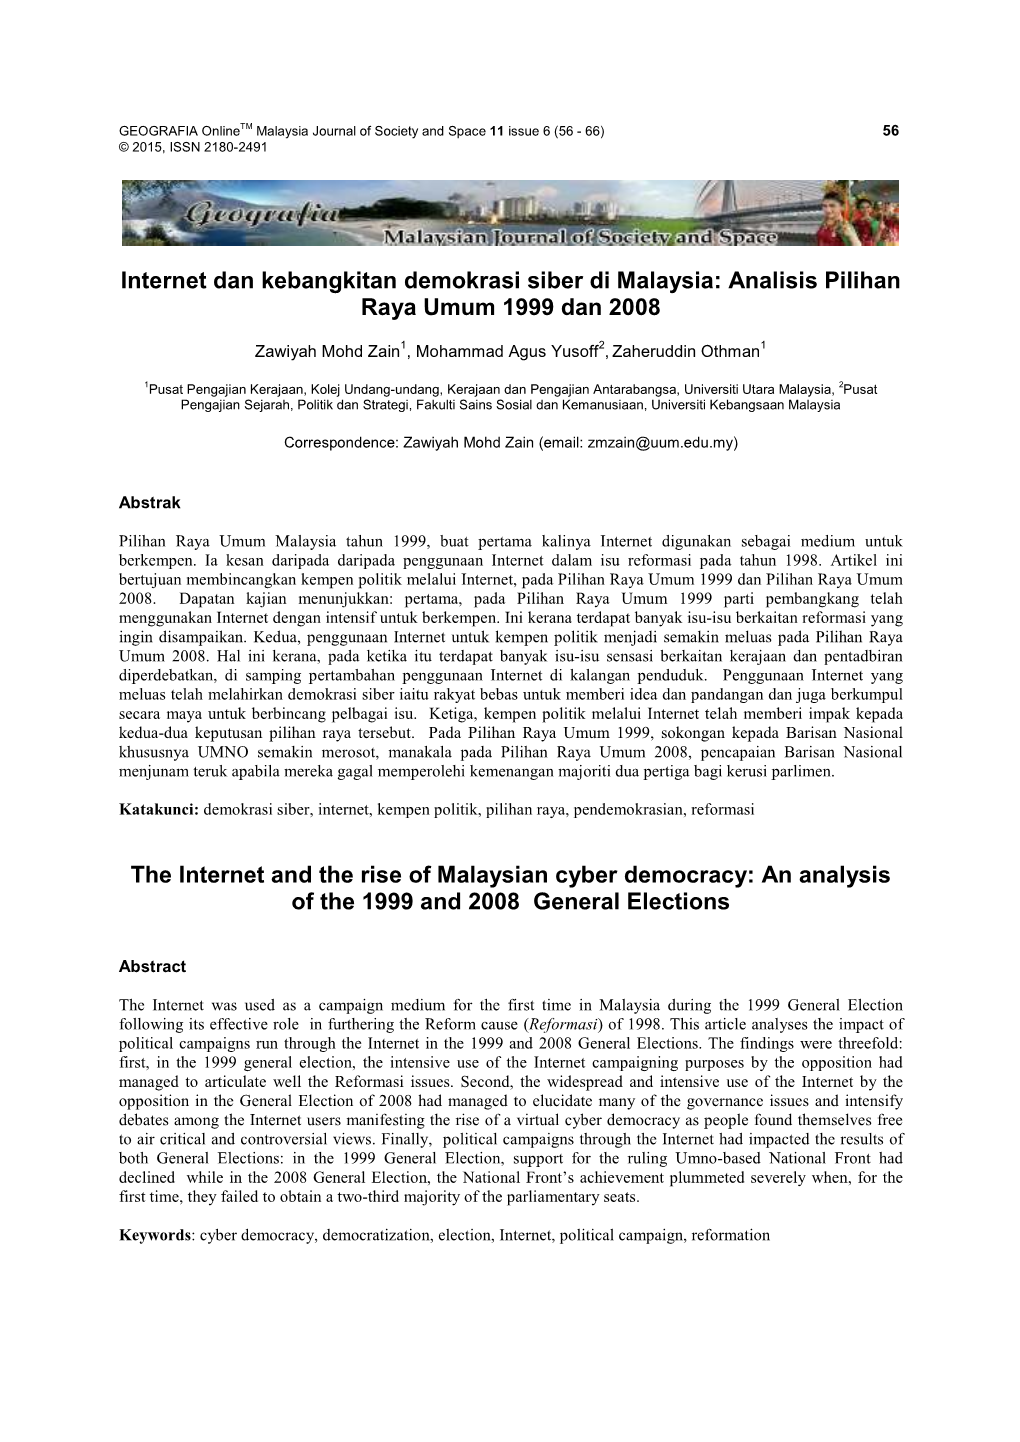 Internet Dan Kebangkitan Demokrasi Siber Di Malaysia: Analisis Pilihan Raya Umum 1999 Dan 2008